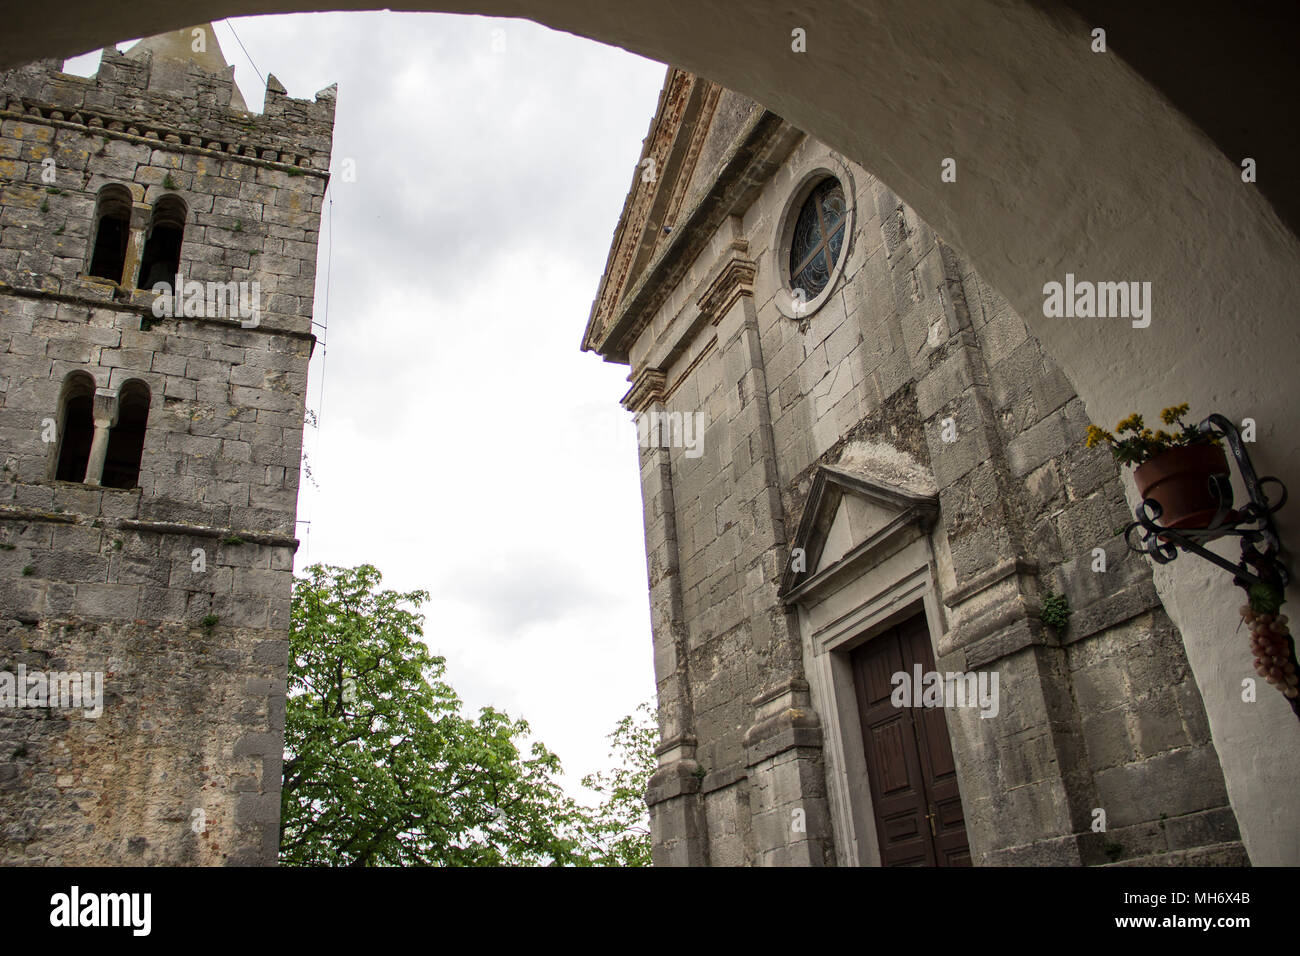 Istrie Central (Istra), Croatie - vieille église en pierre et beffroi dans une petite ville médiévale Hum Banque D'Images